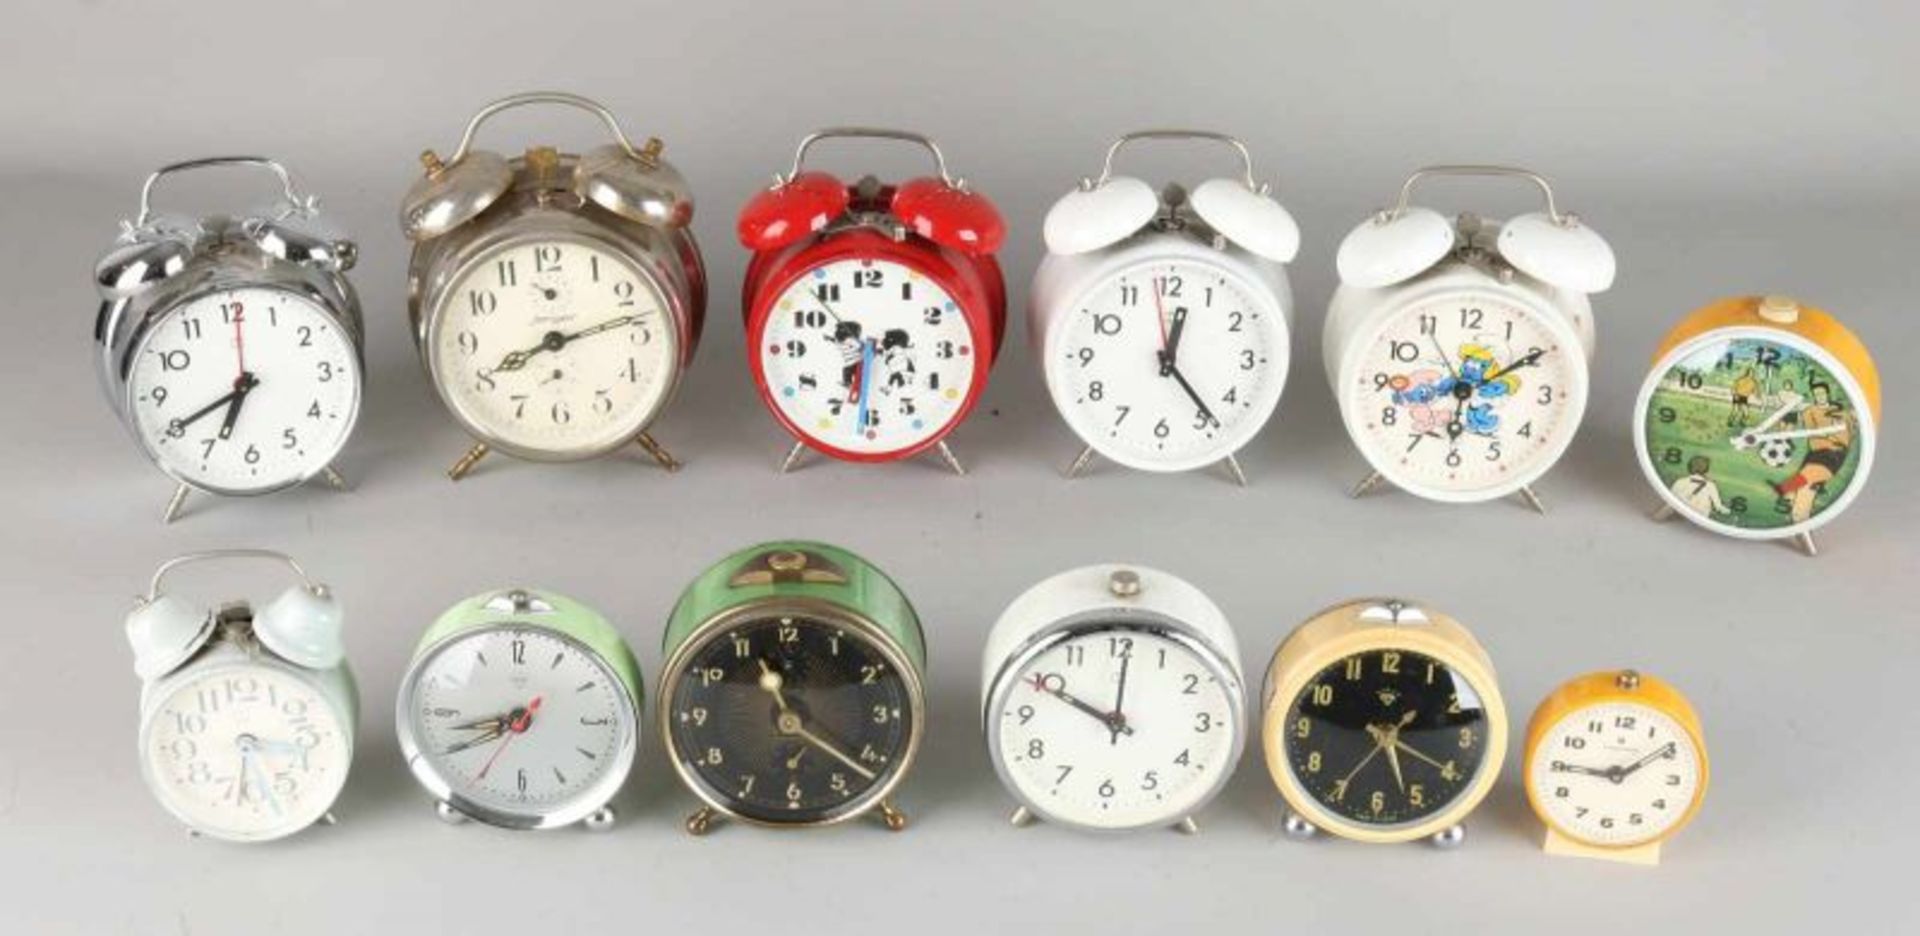 Twelve old alarm clocks. Divers. 20th century. Size 7-11 cm. In fair / good condition.